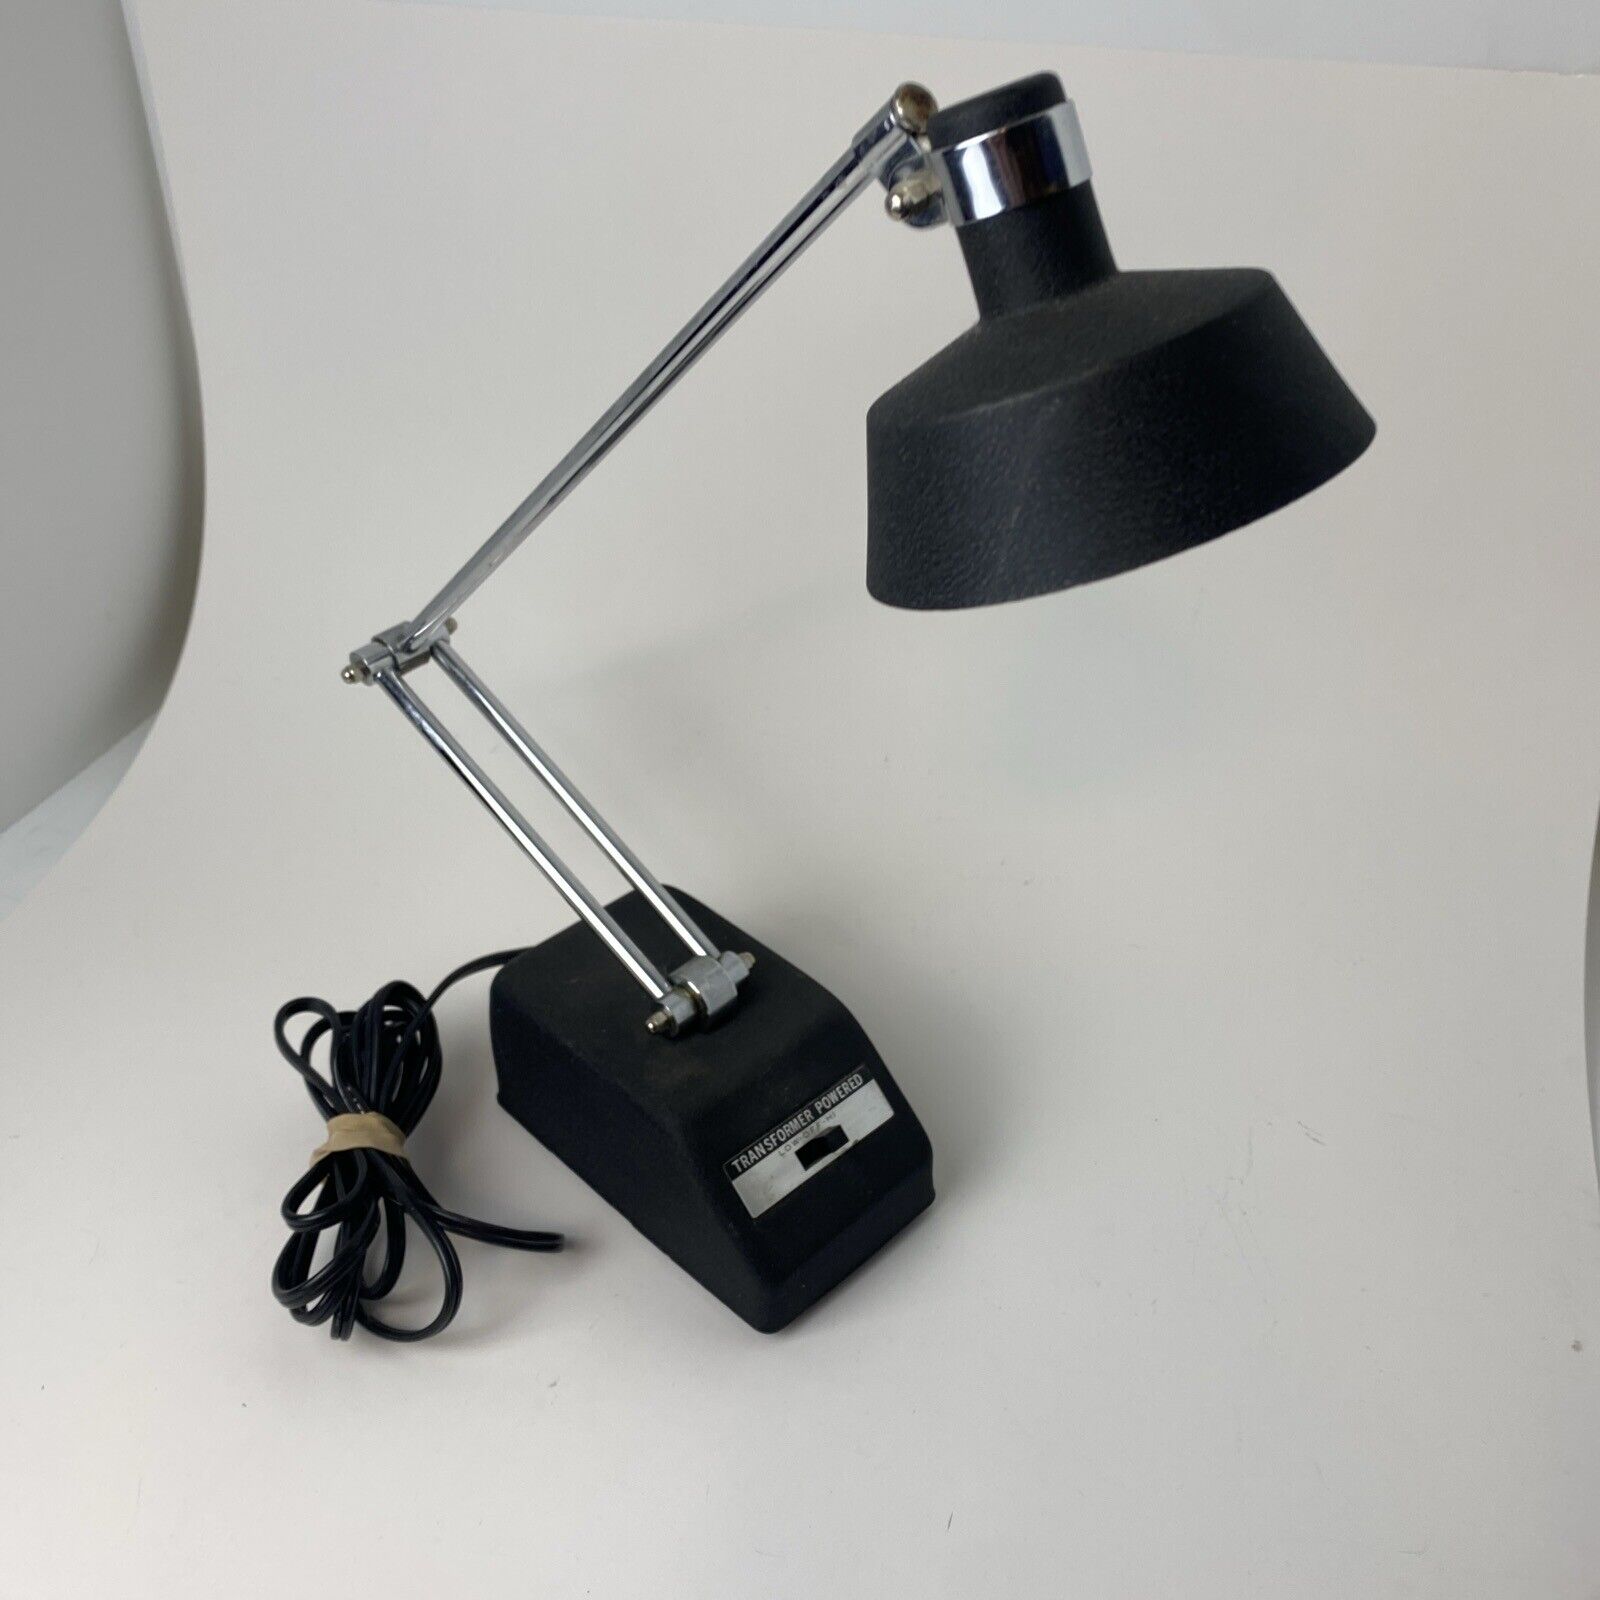 Vintage Mobilite Articulating Desk Lamp, Black with Lo/Hi Setting, Model #95 